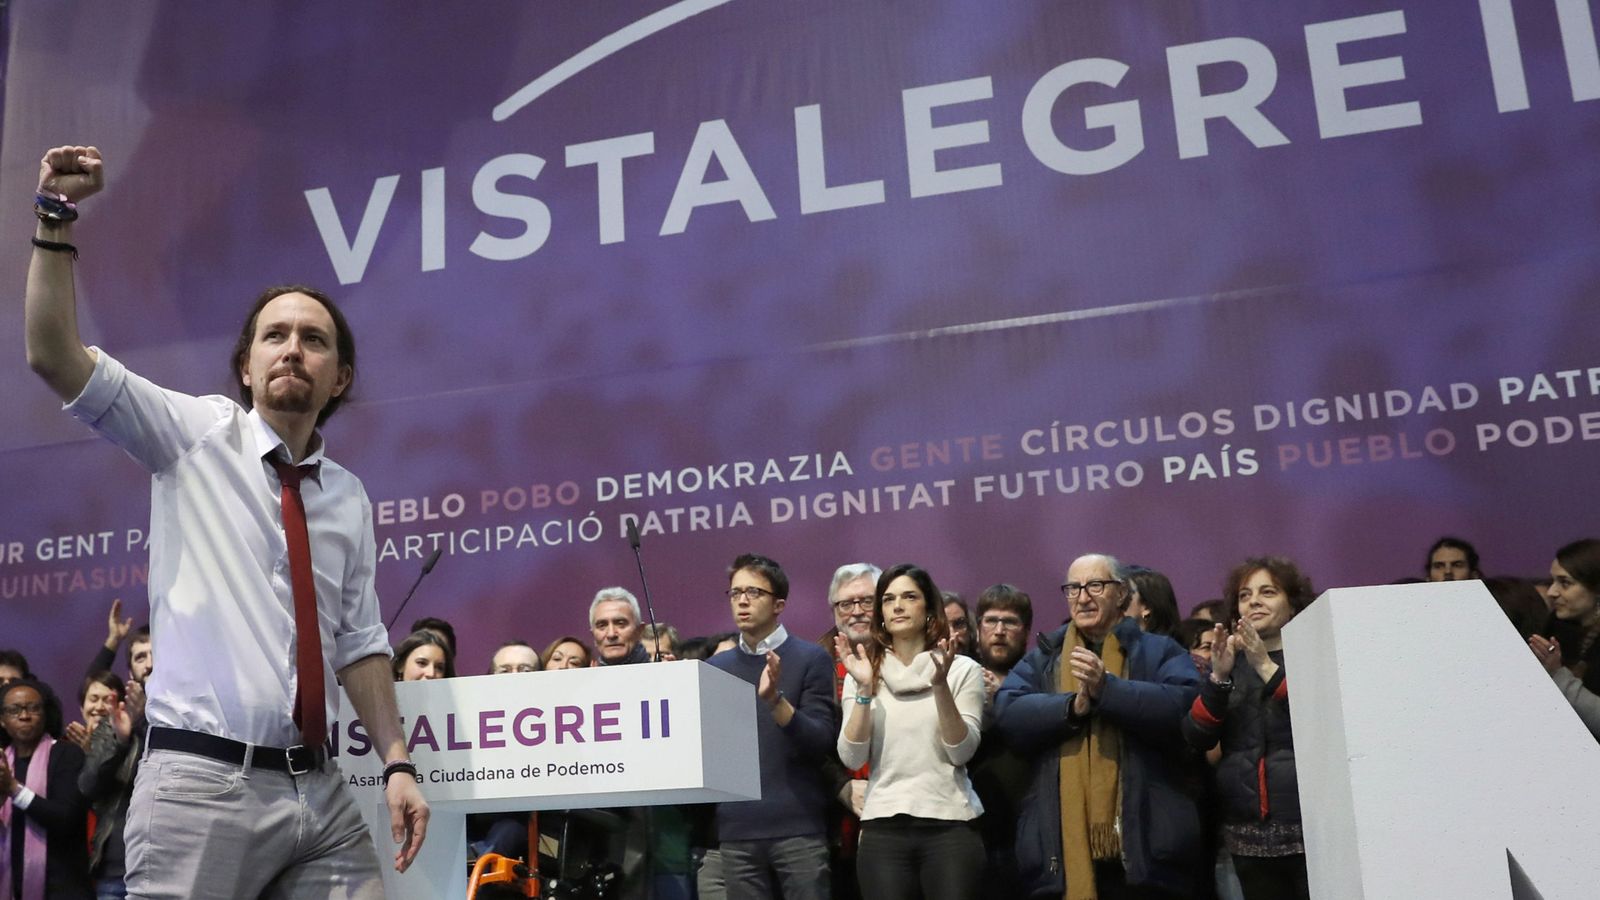 Foto: El líder de Podemos, Pablo Iglesias, con el resto de miembros de la dirección tras anunciarse los resultados de la asamblea de Vistalegre II en febrero del pasado año. (EFE)